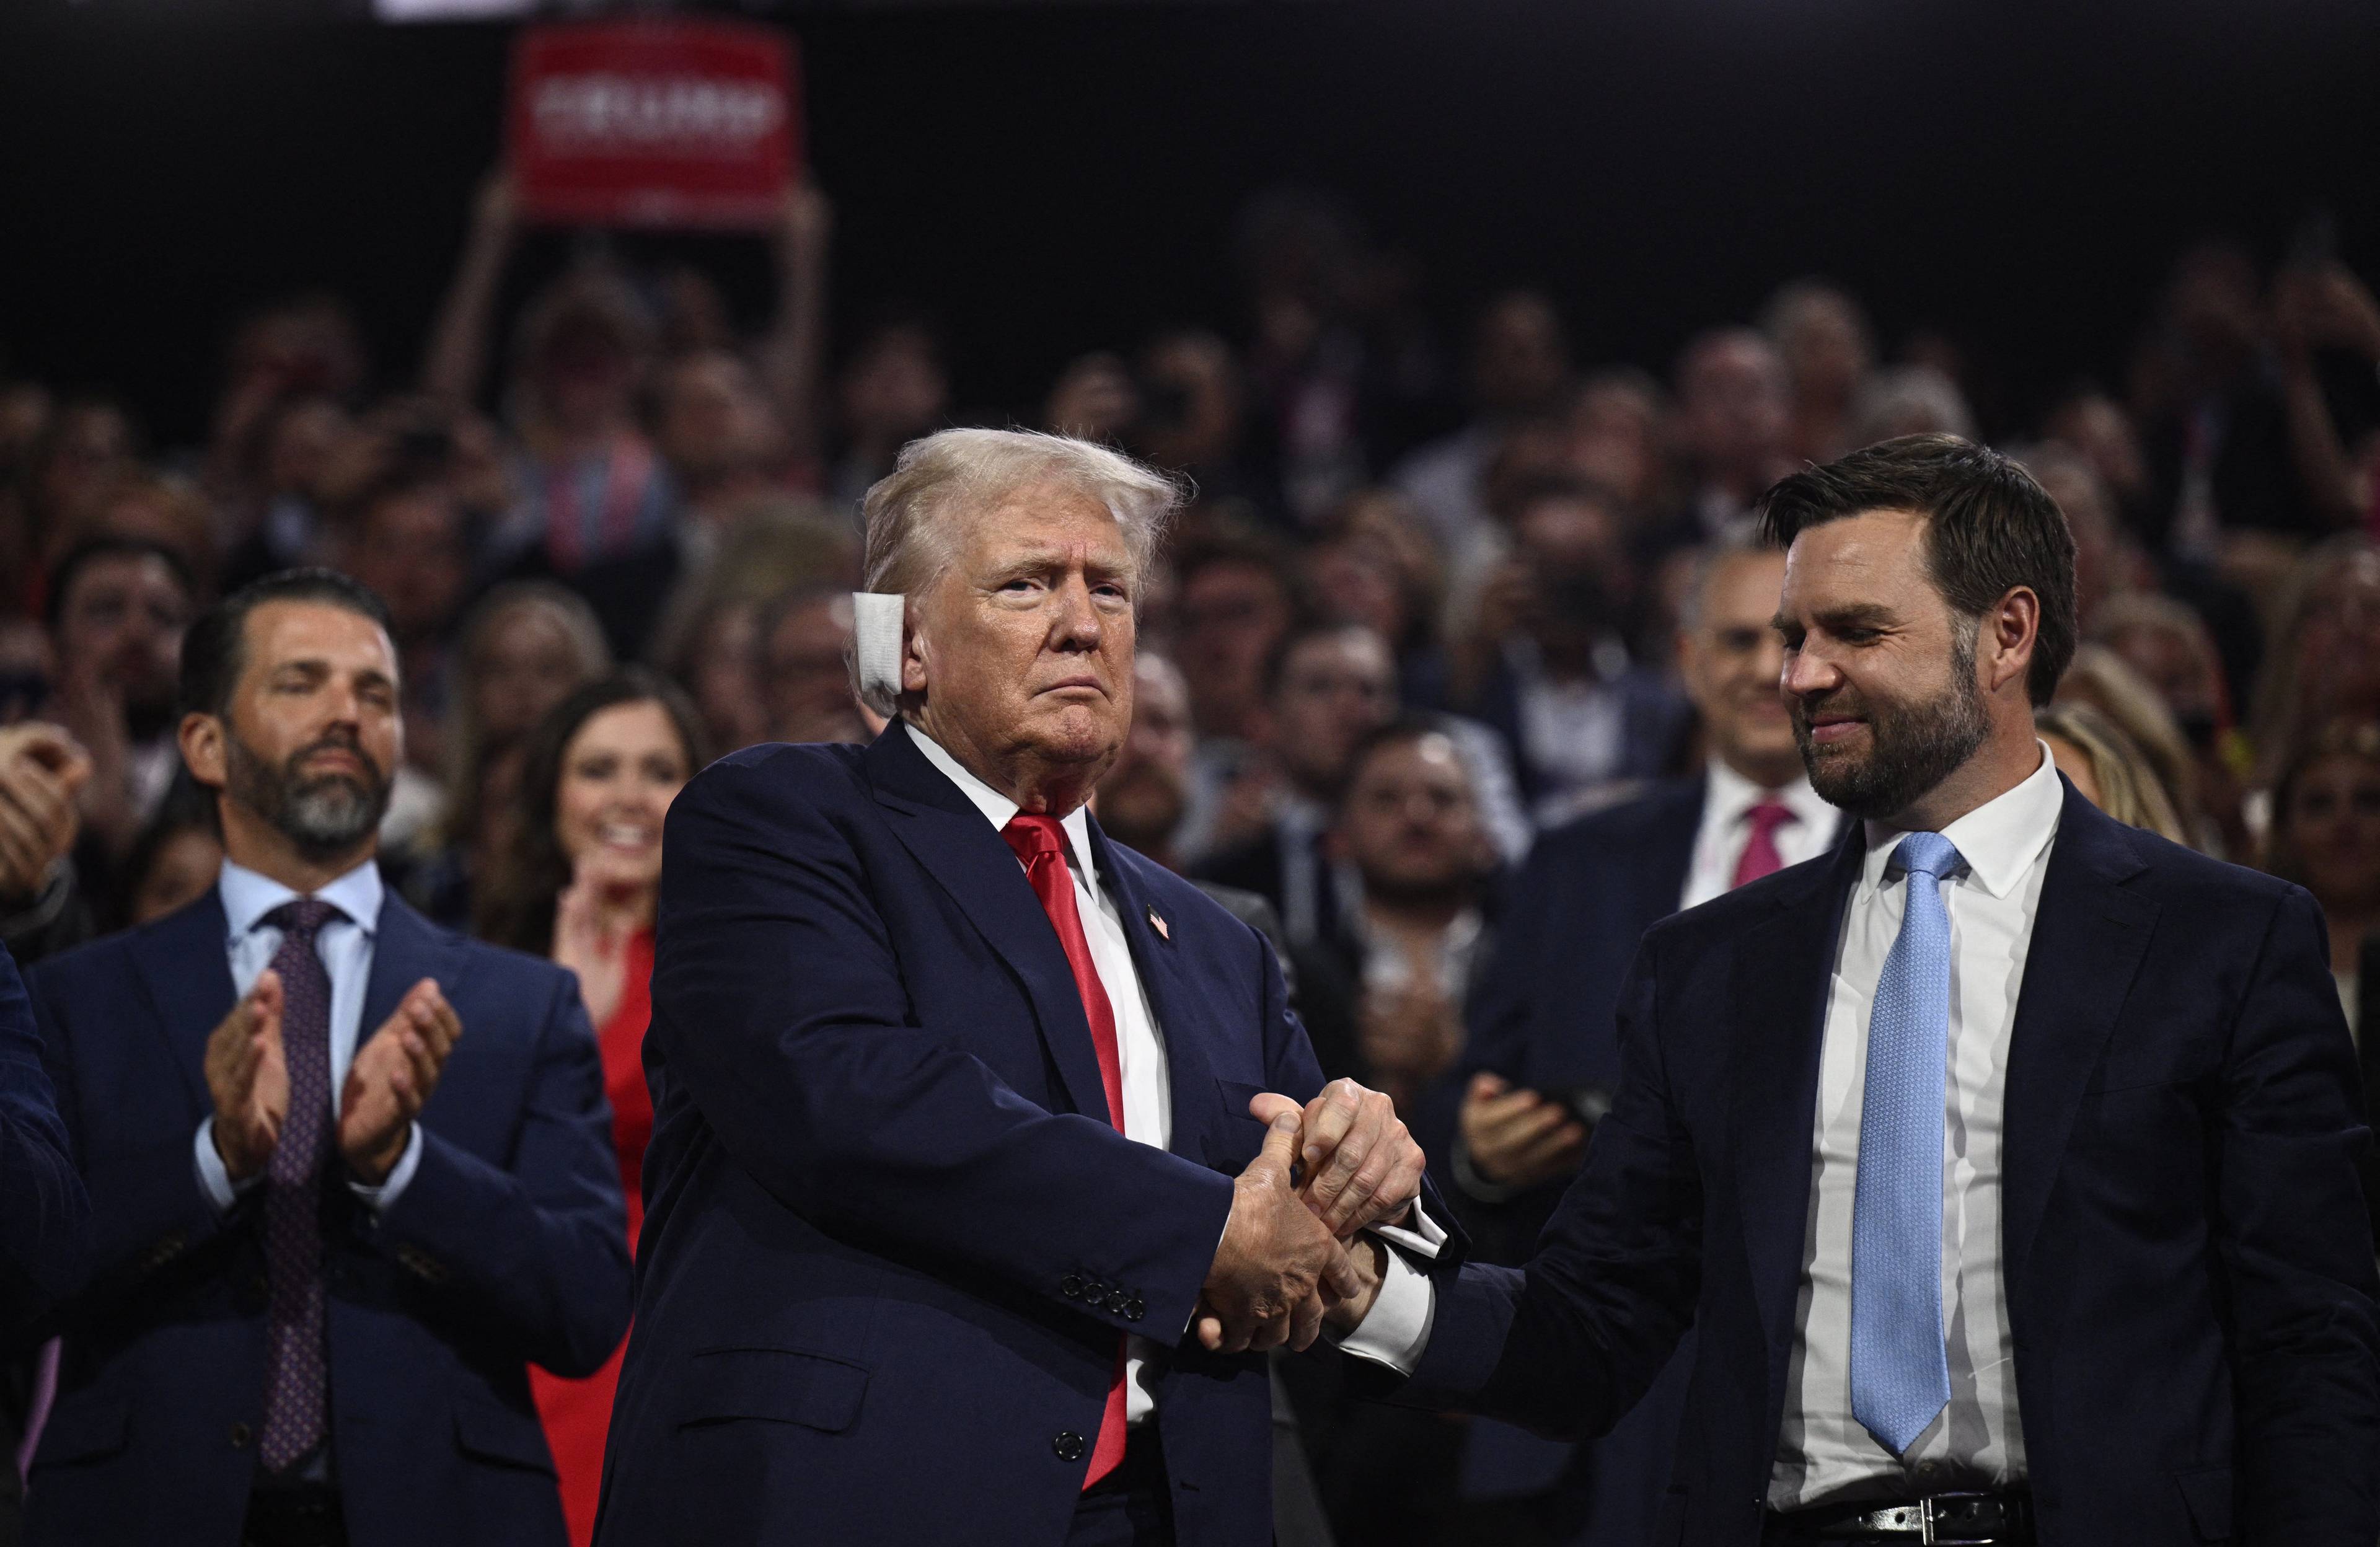 Dwóch mężczyzn (Donald Trump i James David Vance) stoi obok siebie, ściskając sobie ręce, w tle publiczność